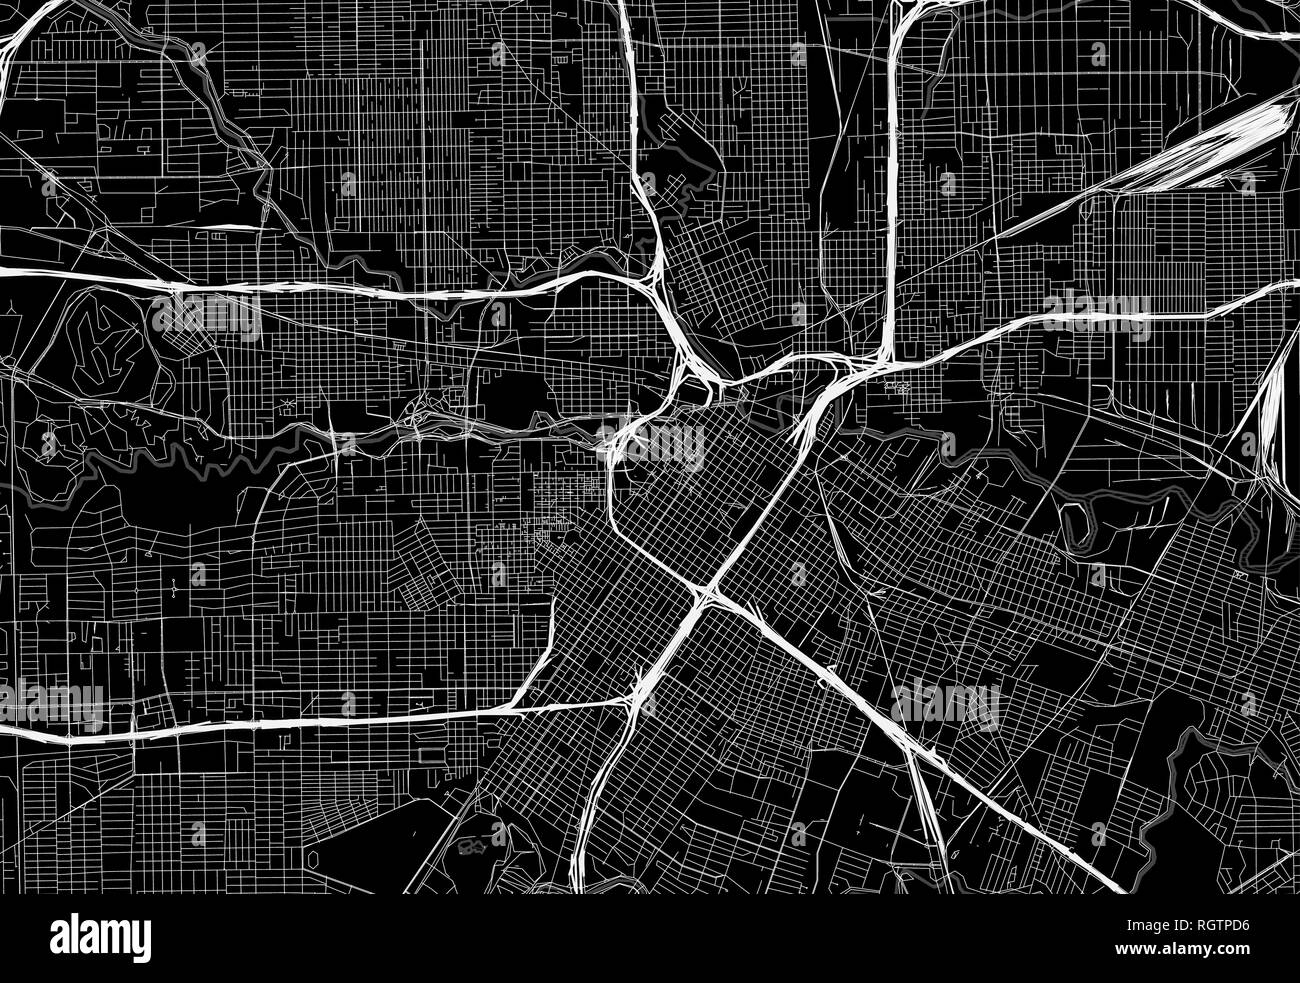 Black Mapa del centro de Houston, EE.UU. Este vector artmap es creado como un fondo decorativo o un signo único para viajar. Ilustración del Vector